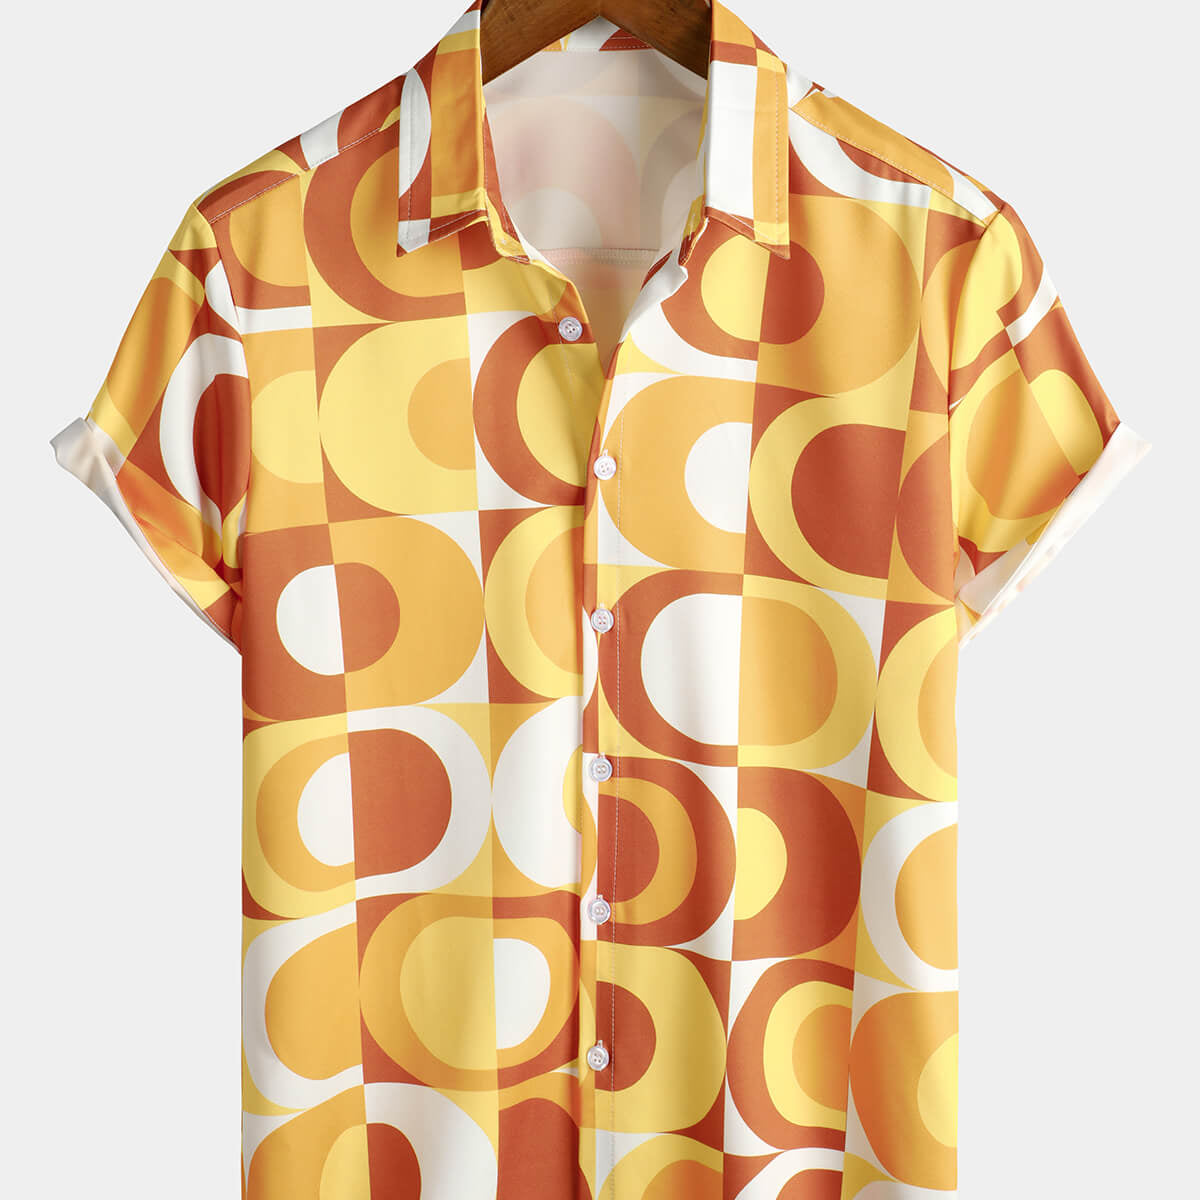 Camisa de manga corta para hombre, estilo retro, con botones, color naranja, años 70, estilo disco geométrico, playa, verano